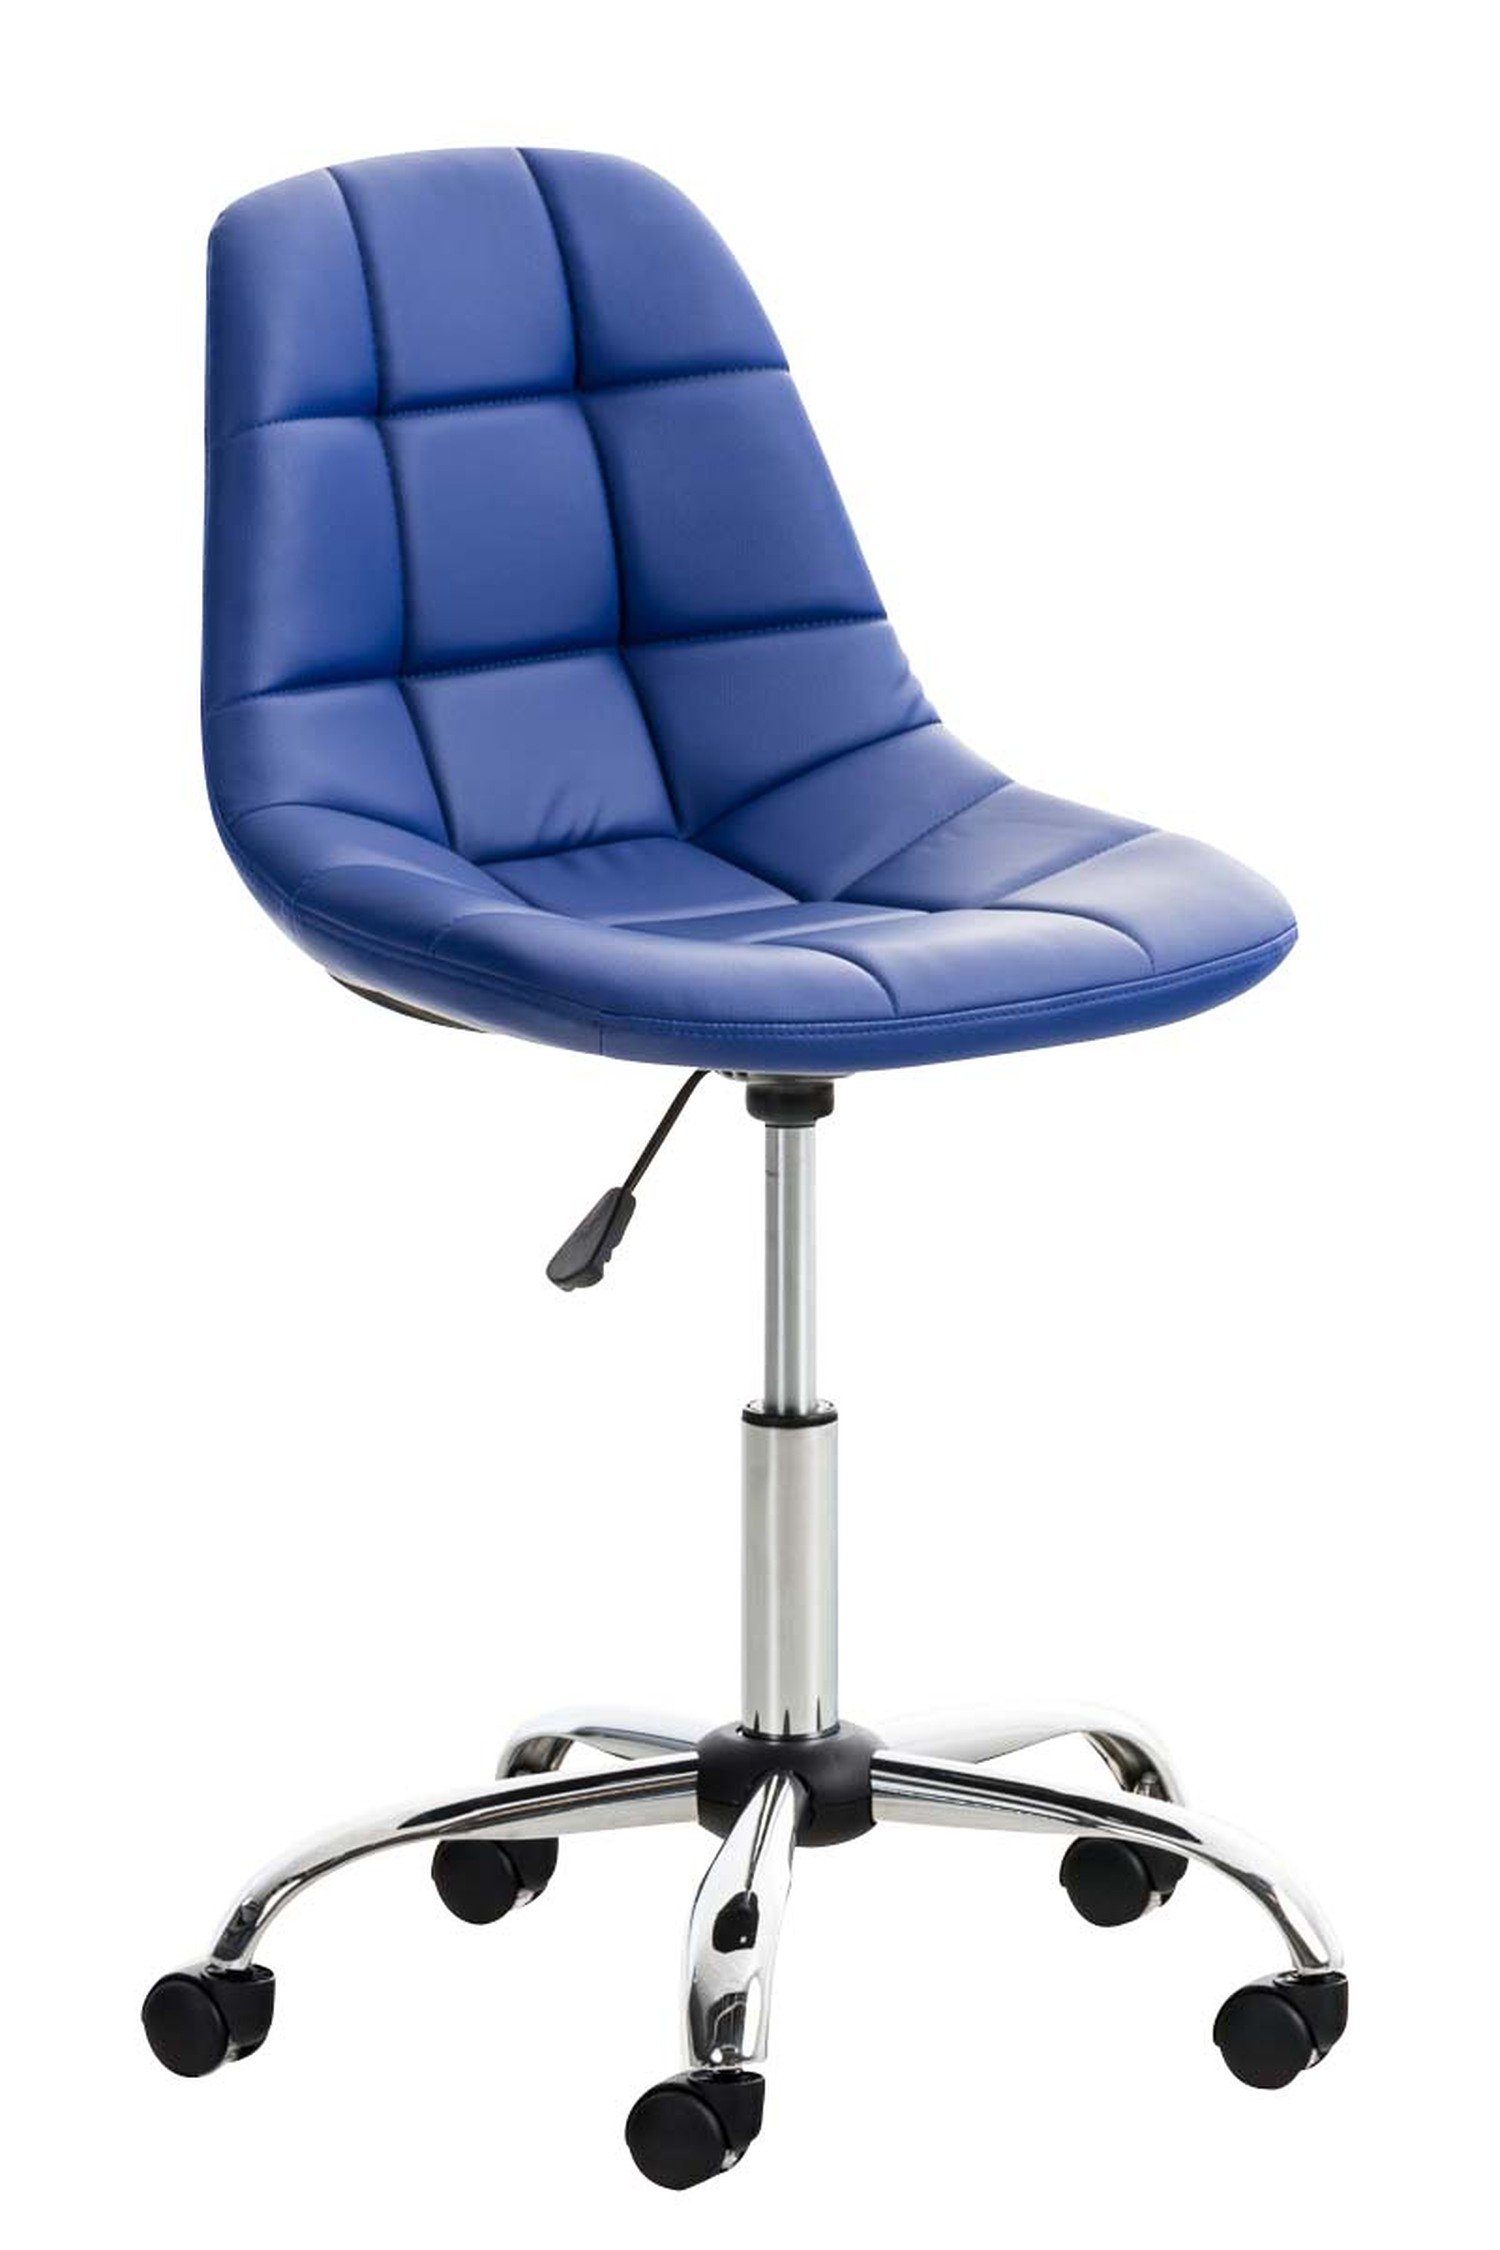 TPFLiving Bürostuhl Emily mit bequemer Rückenlehne - höhenverstellbar und 360° drehbar (Schreibtischstuhl, Drehstuhl, Chefsessel, Konferenzstuhl), Gestell: Metall chrom - Sitzfläche: Kunstleder blau